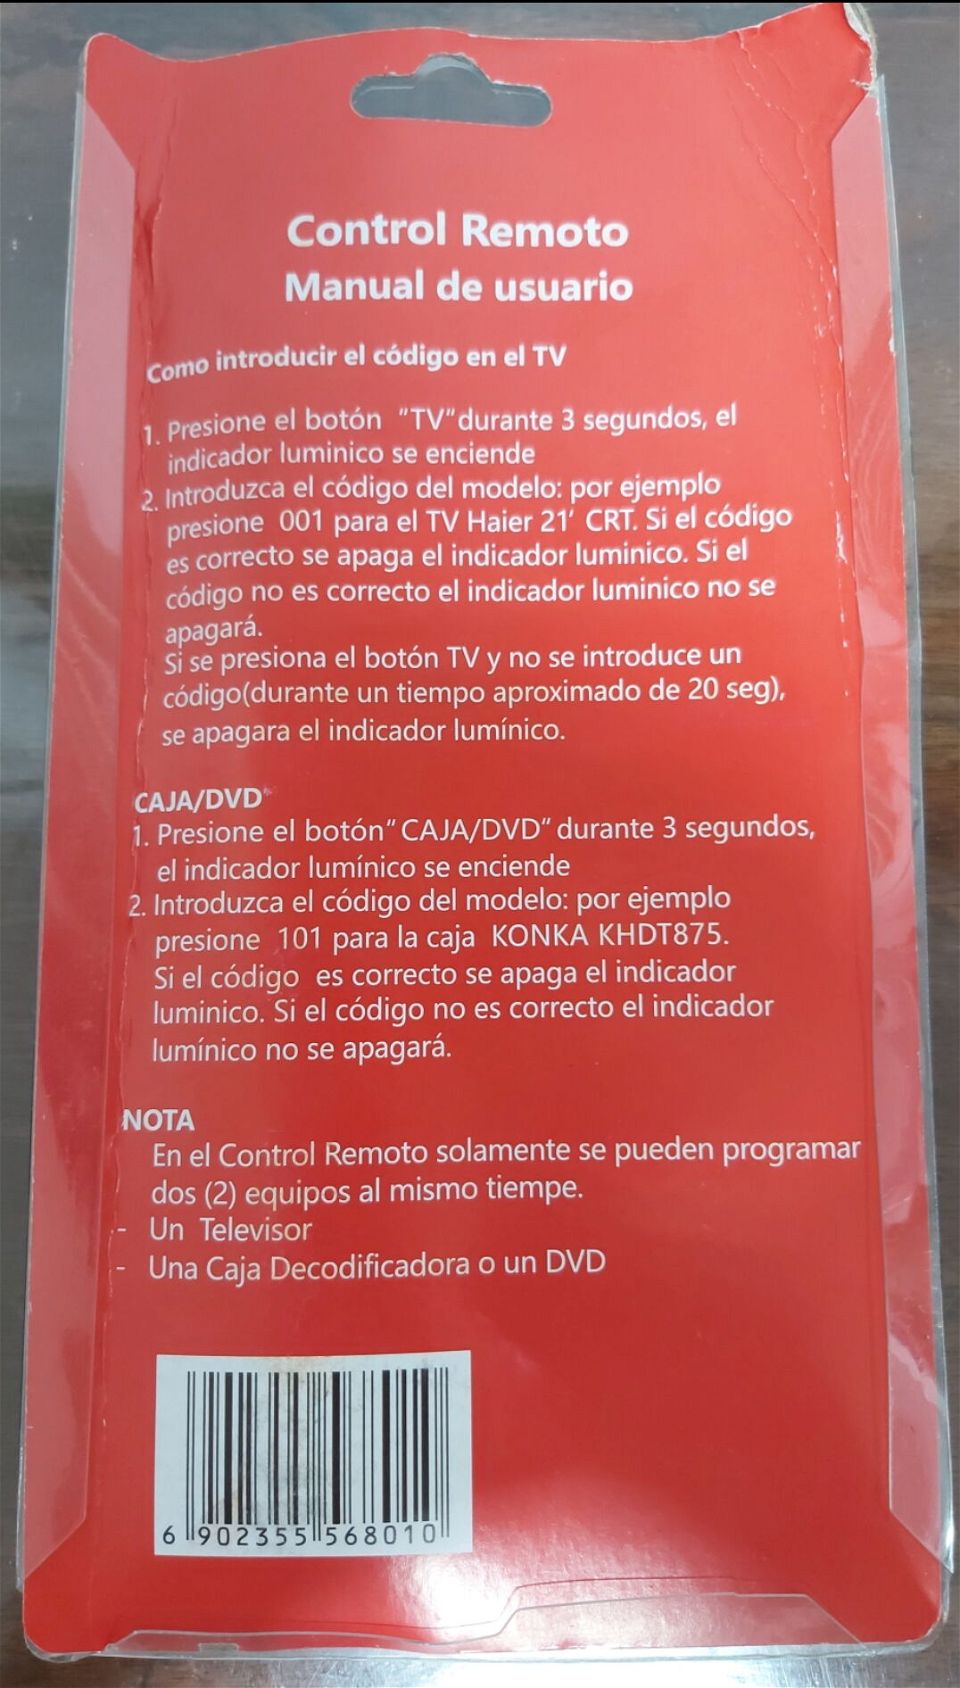 Vendo mando universal para cajita tv y DVD en Boyeros, La Habana, Cuba -  Revolico